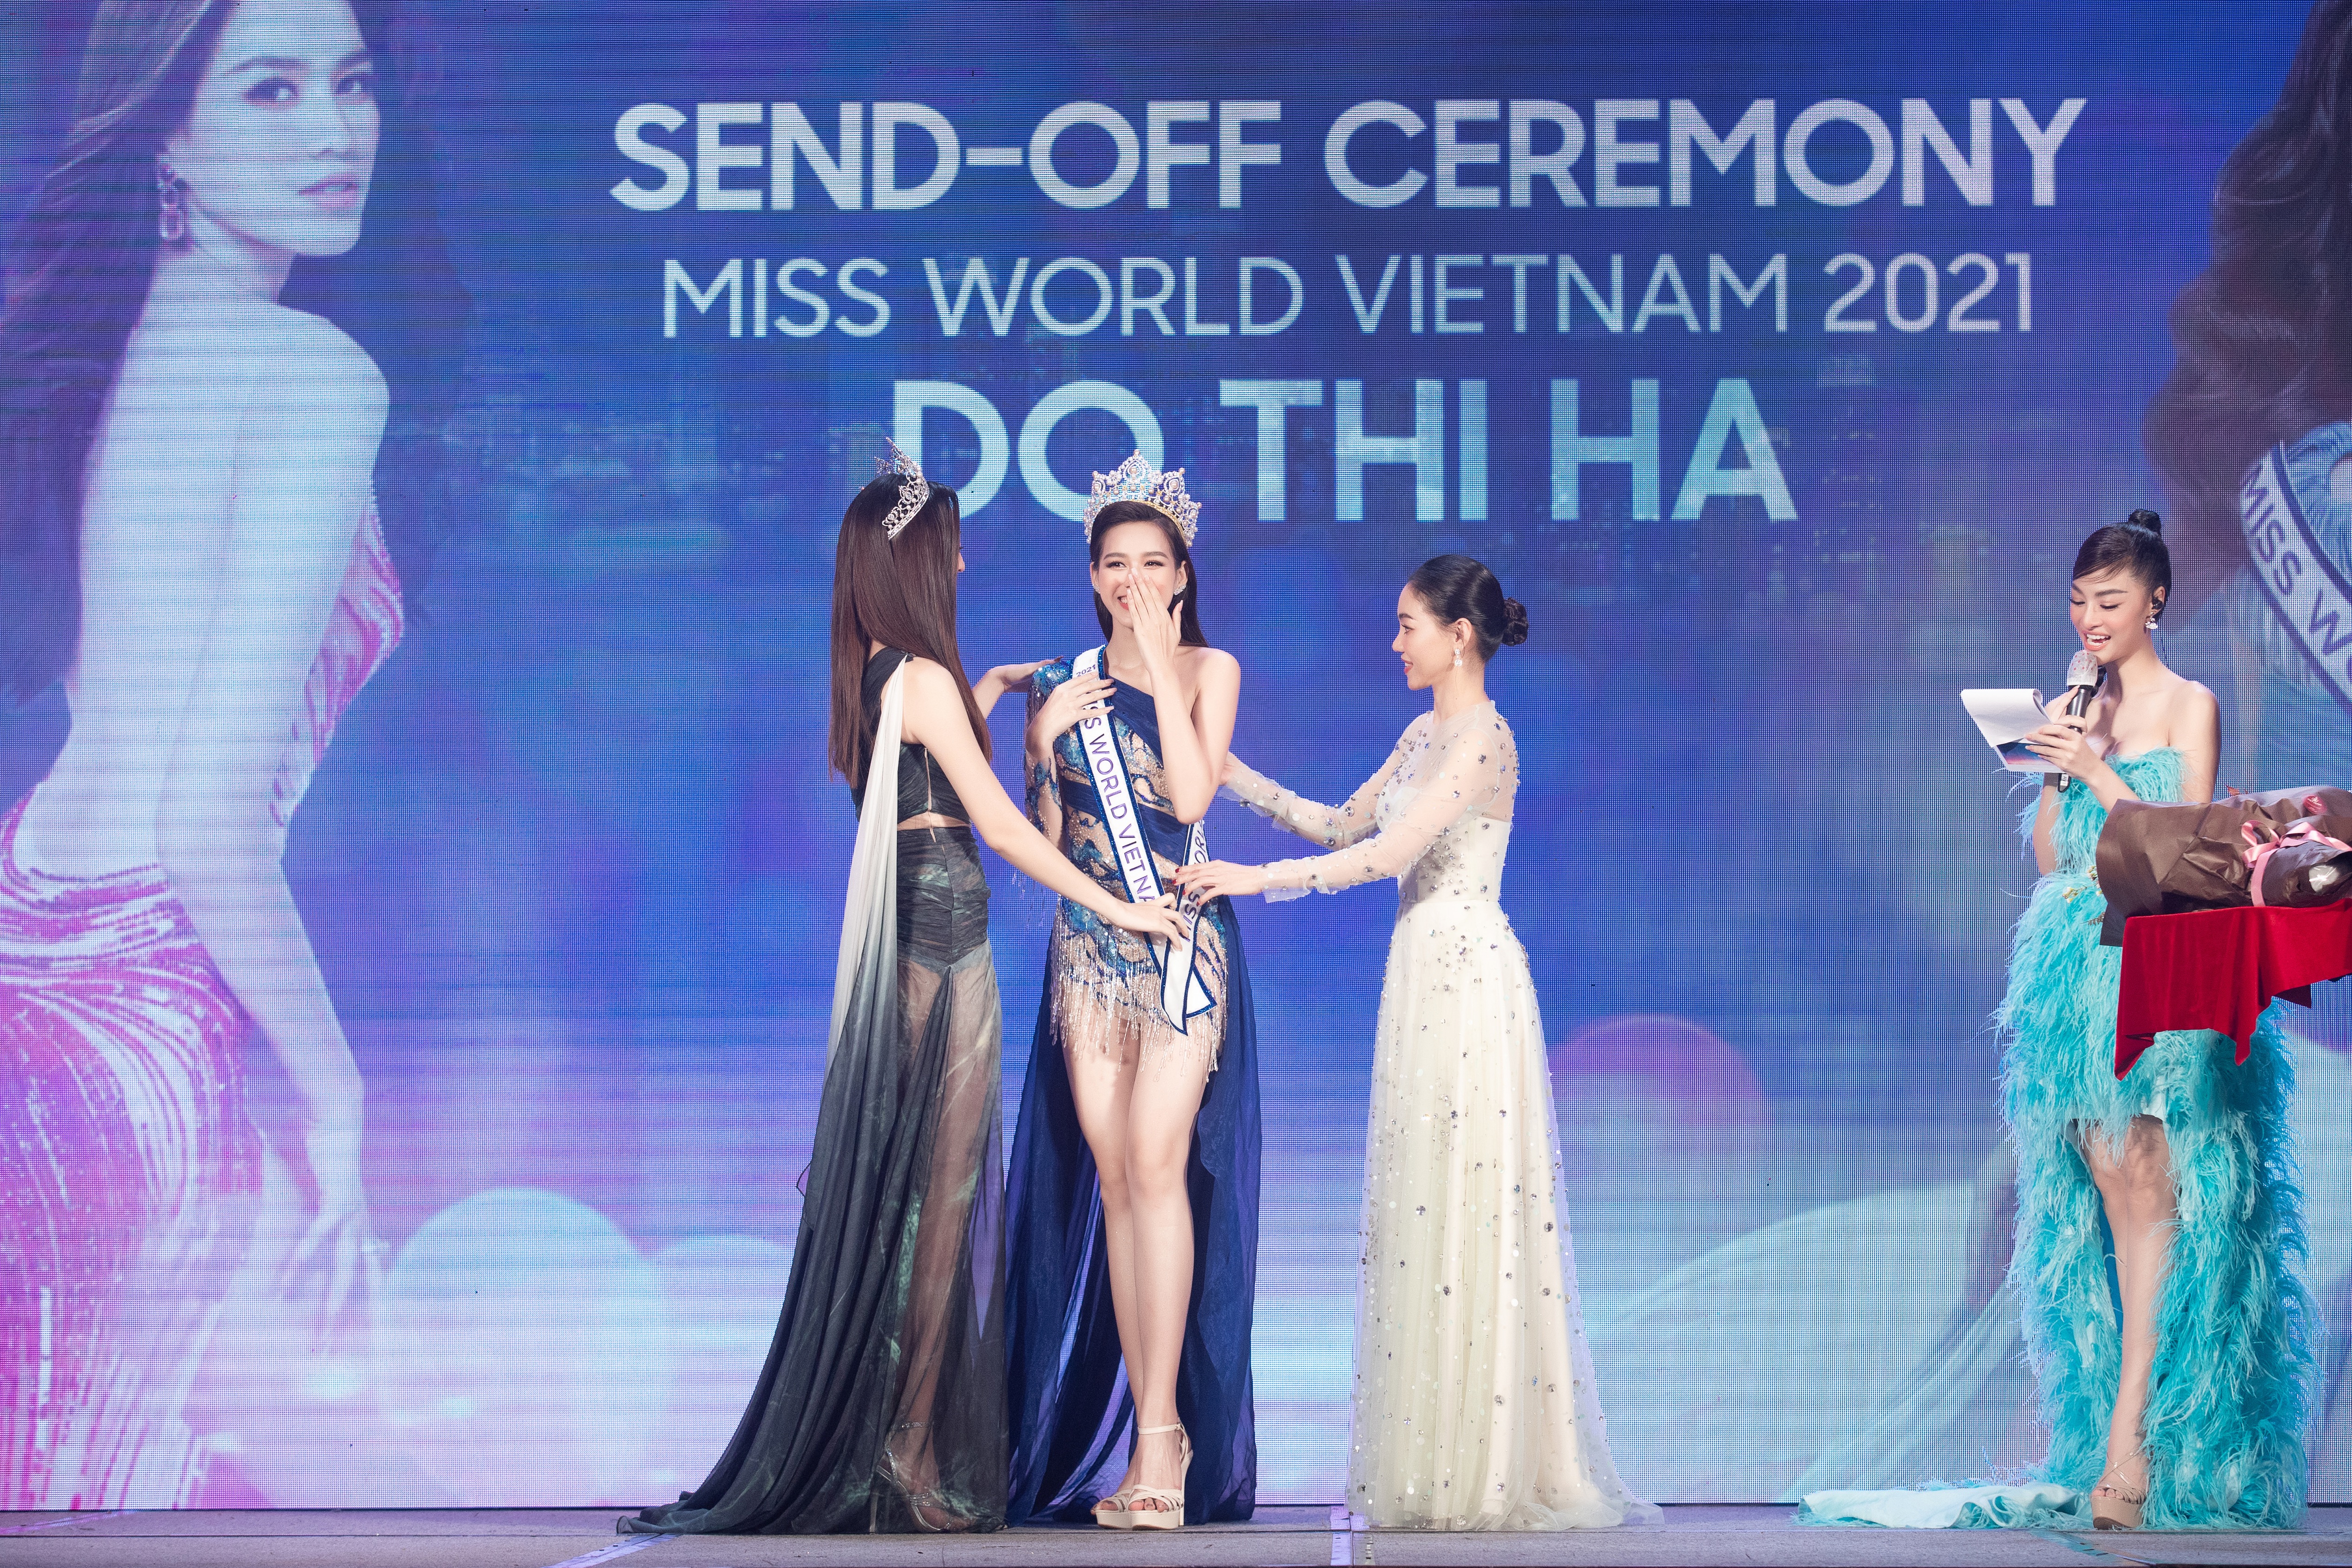 Hoa hậu Đỗ H&agrave; ch&iacute;nh thức được nhận dải băng đại diện Việt Nam từ đương kim Miss World Vietnam 2019 Lương Th&ugrave;y Linh.